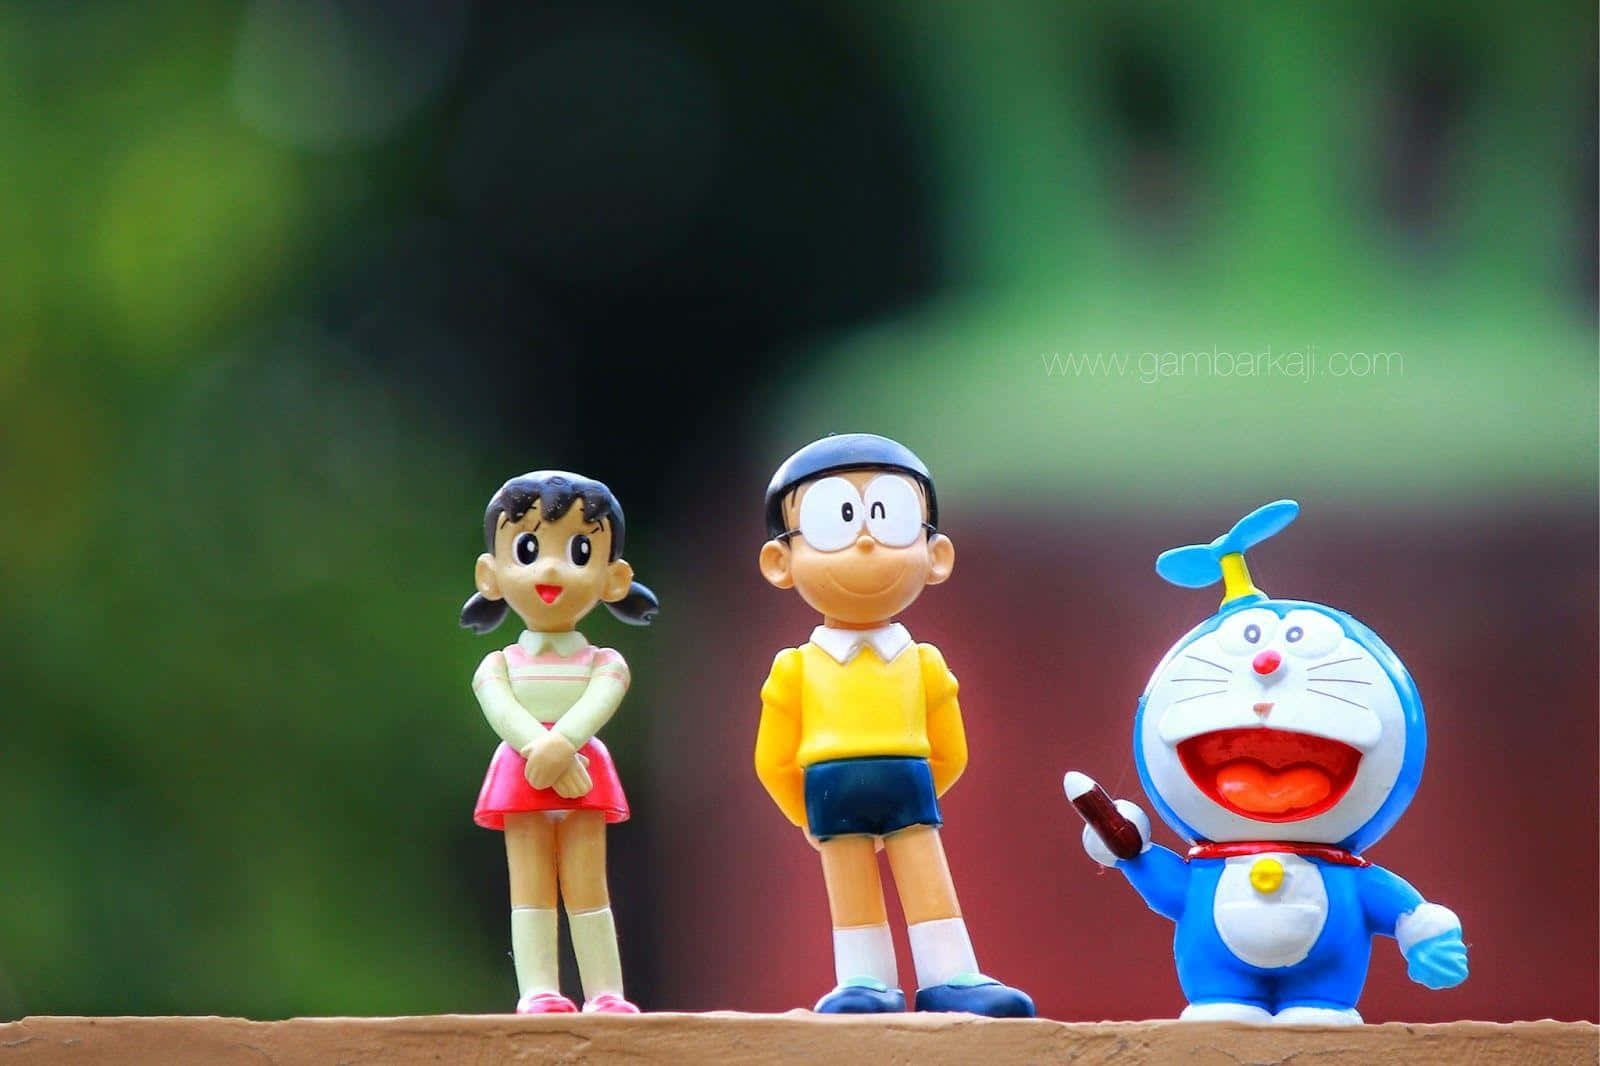 Doraemonbaggrund